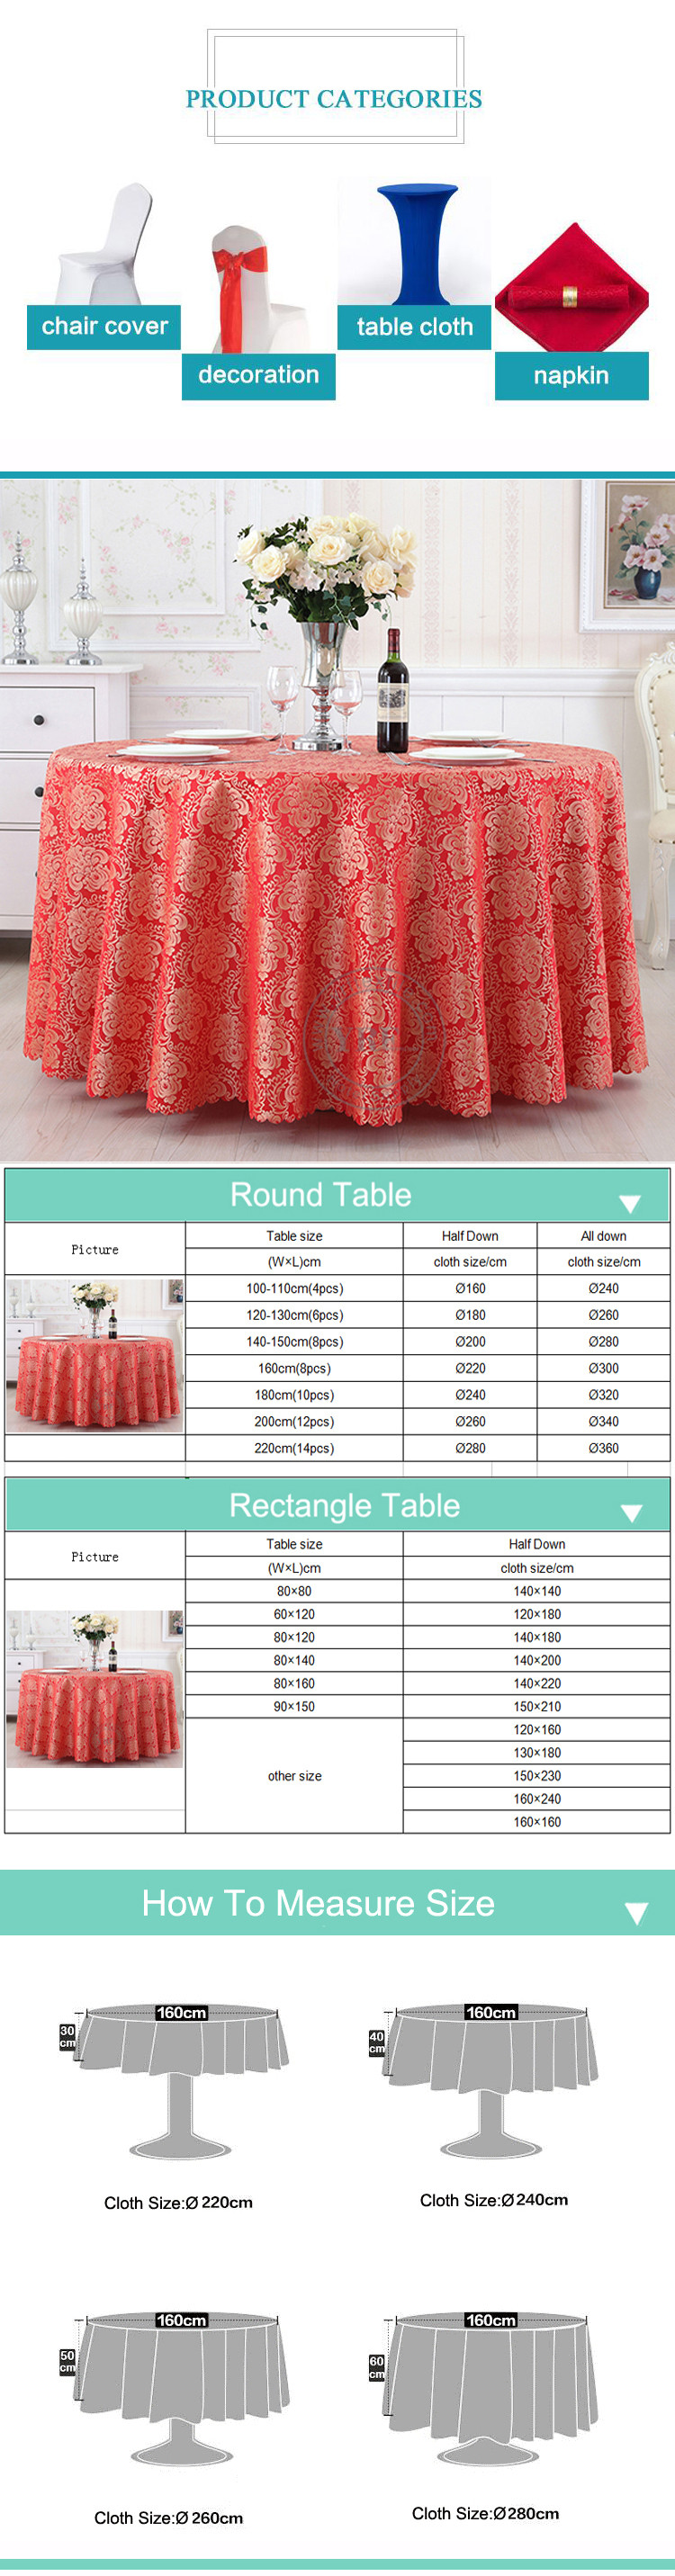 Polyester Spun Banquet Table Cloth